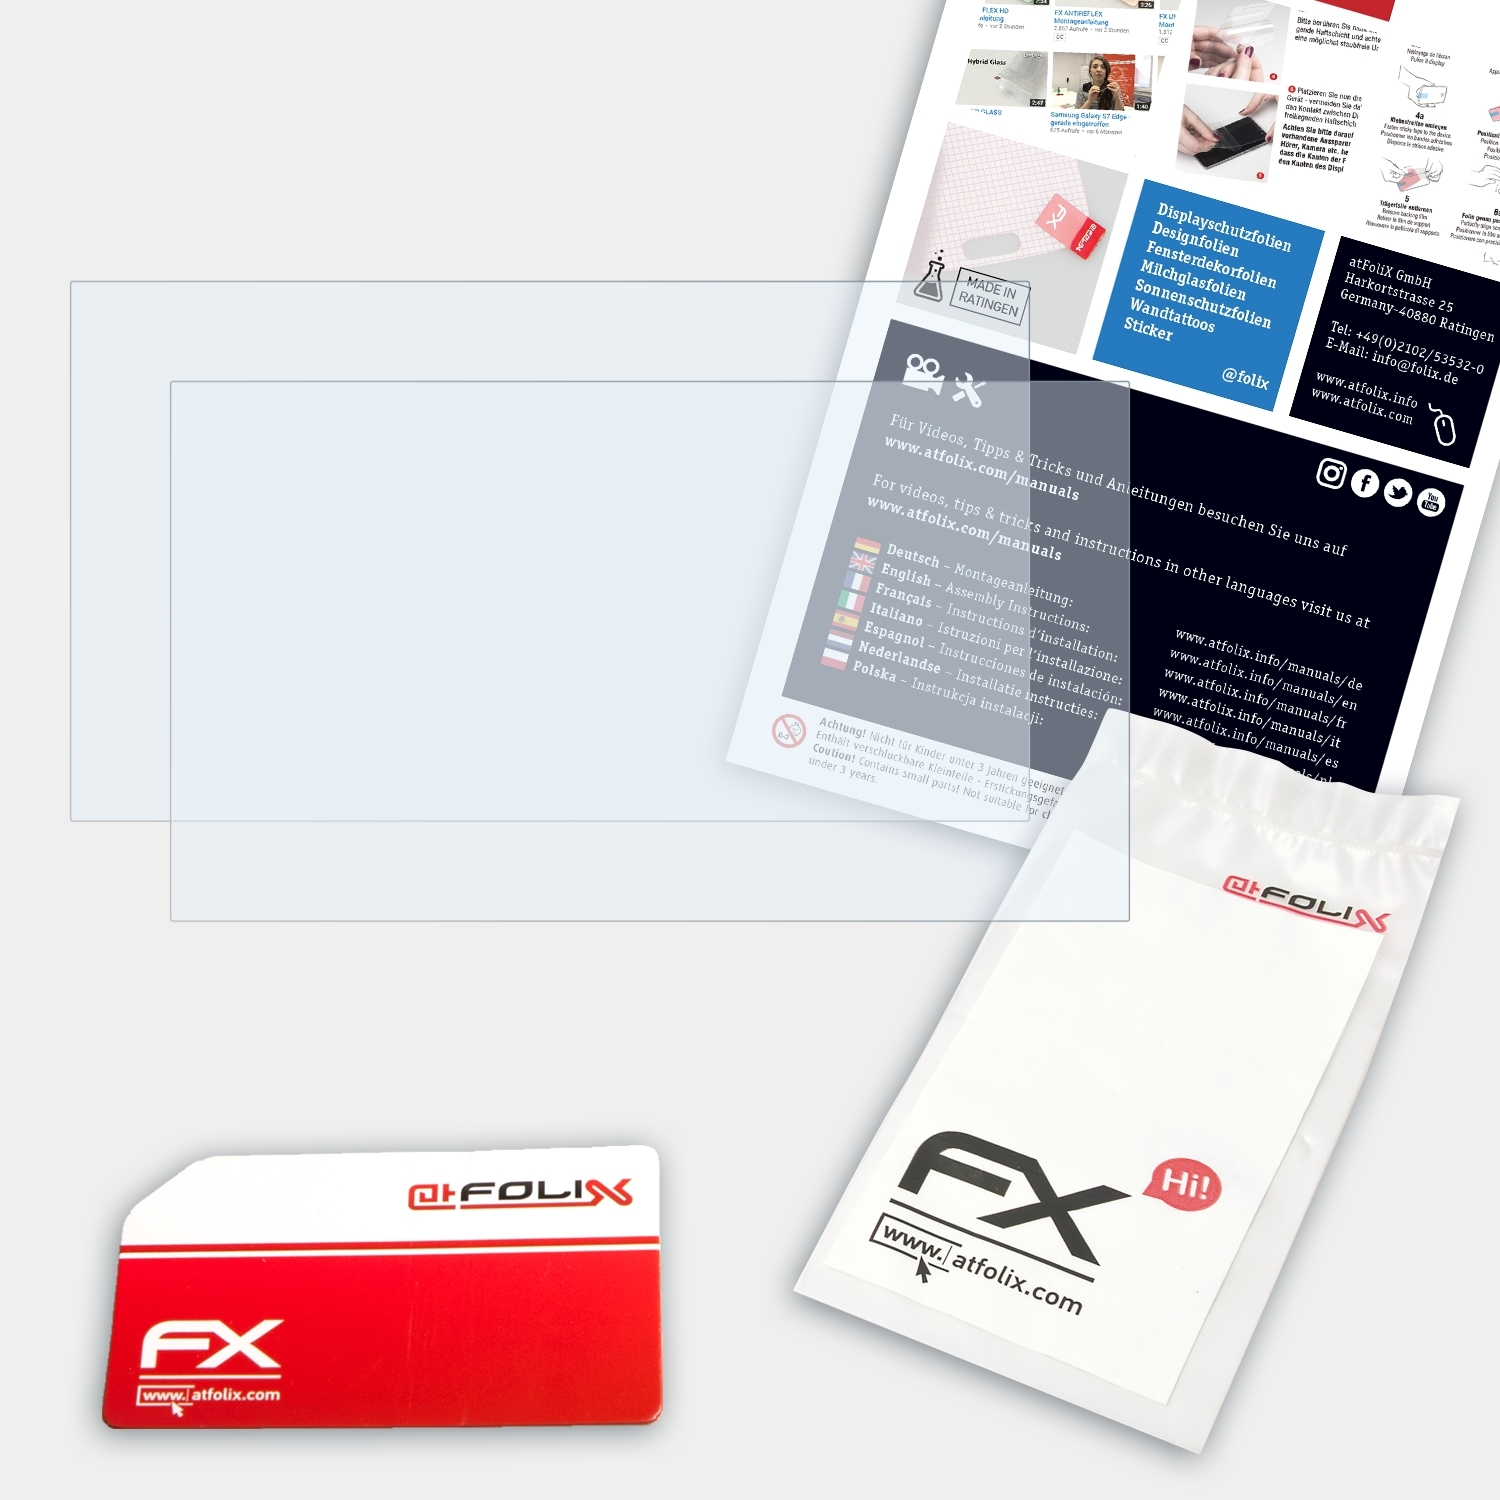 ATFOLIX 2x FX-Clear Displayschutz(für Lenovo inch)) (11 IdeaPad 120S